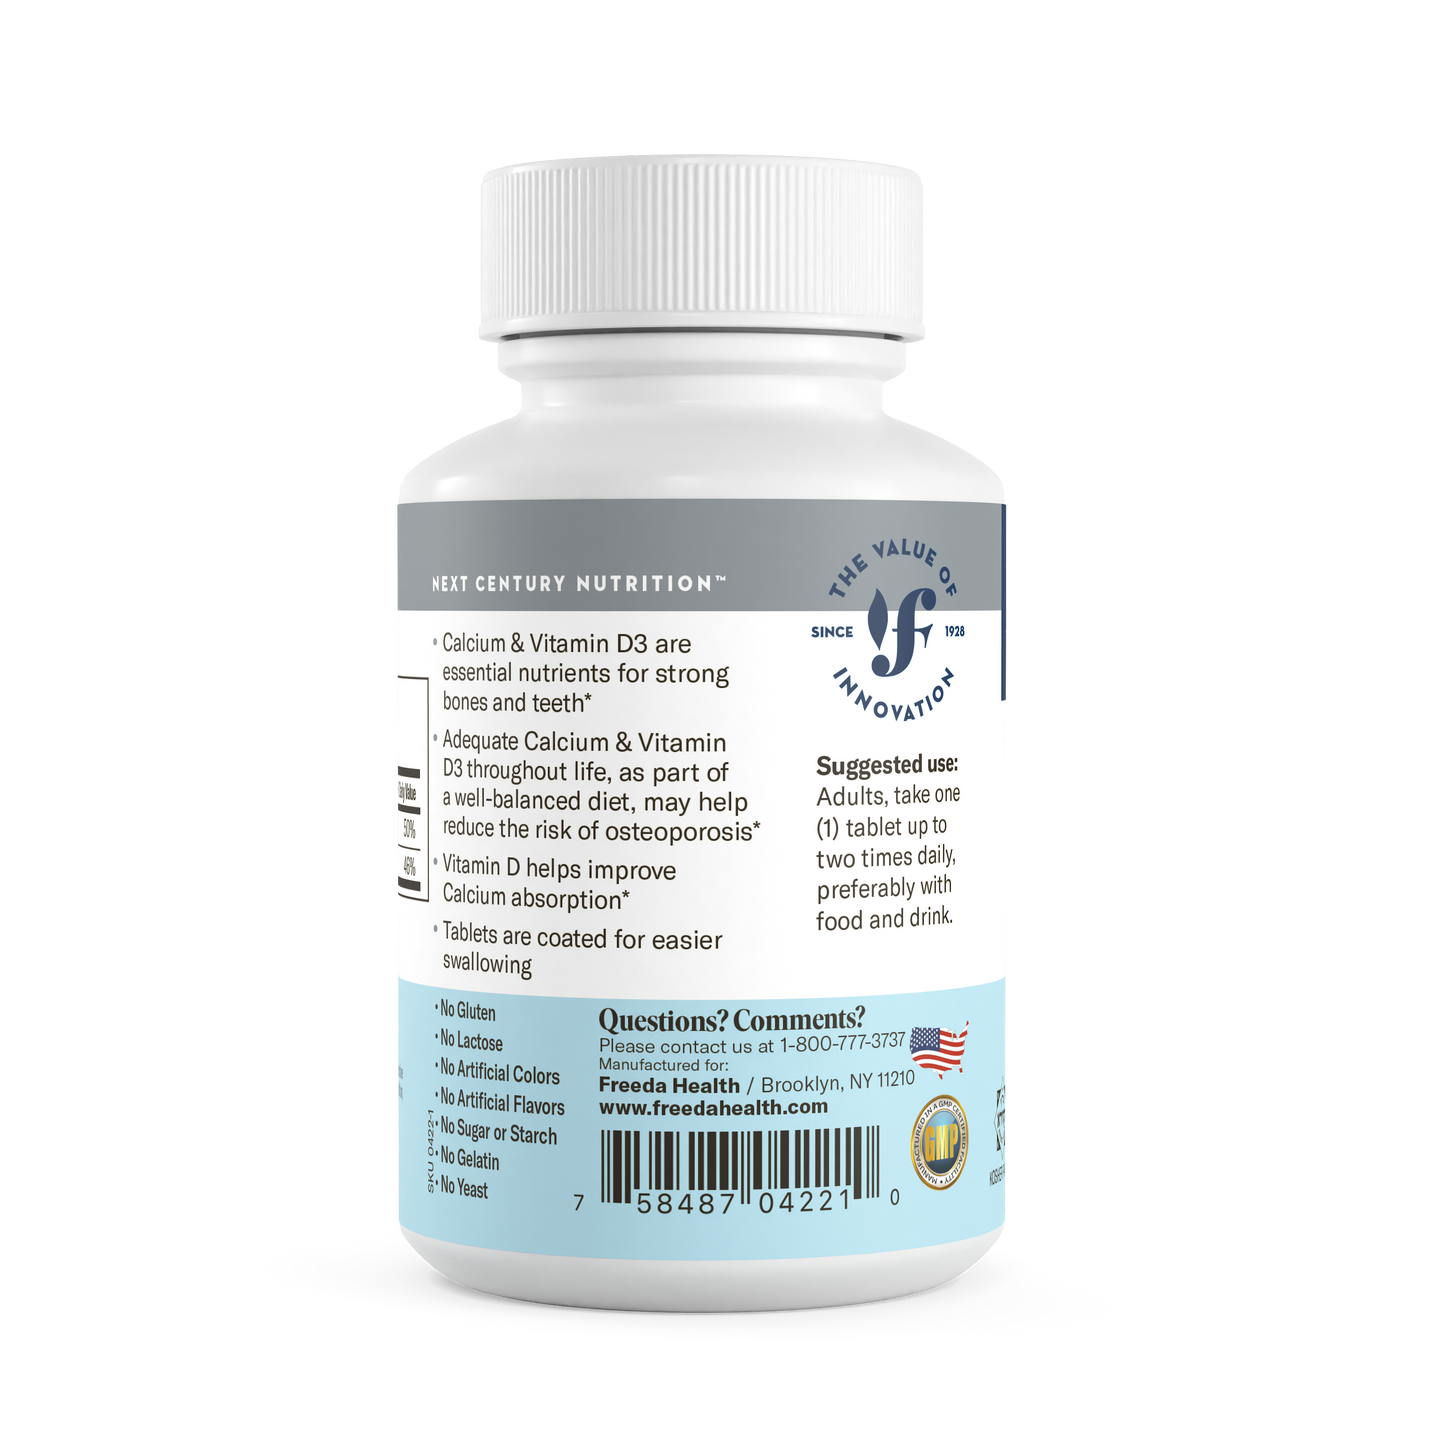 Calcium 600 mg w/ D3 400 IU - 100 Tablets